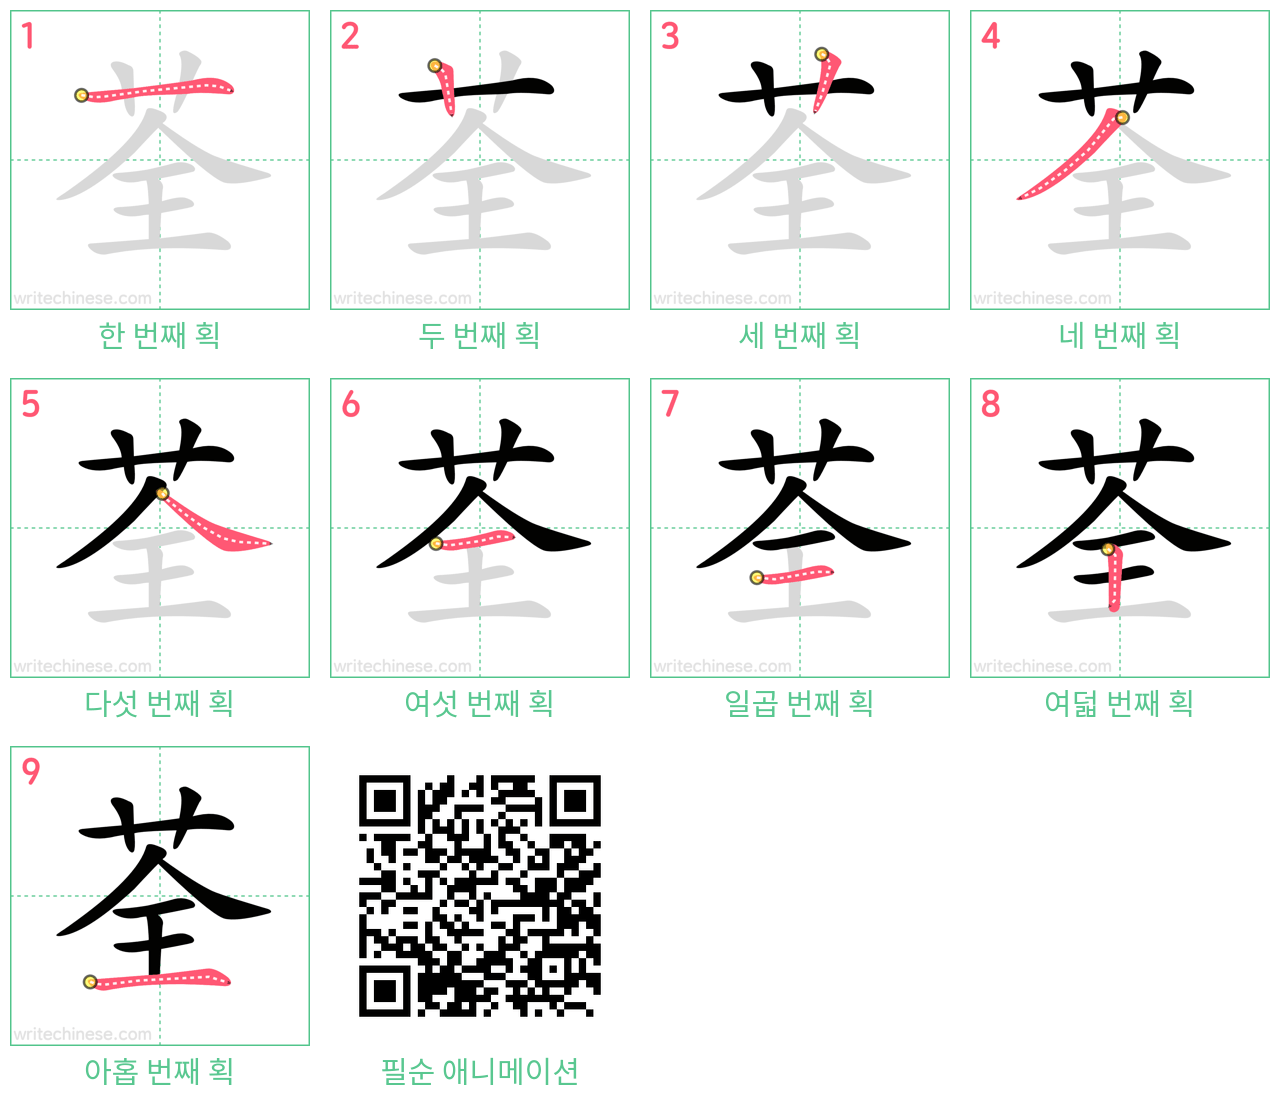 荃 step-by-step stroke order diagrams